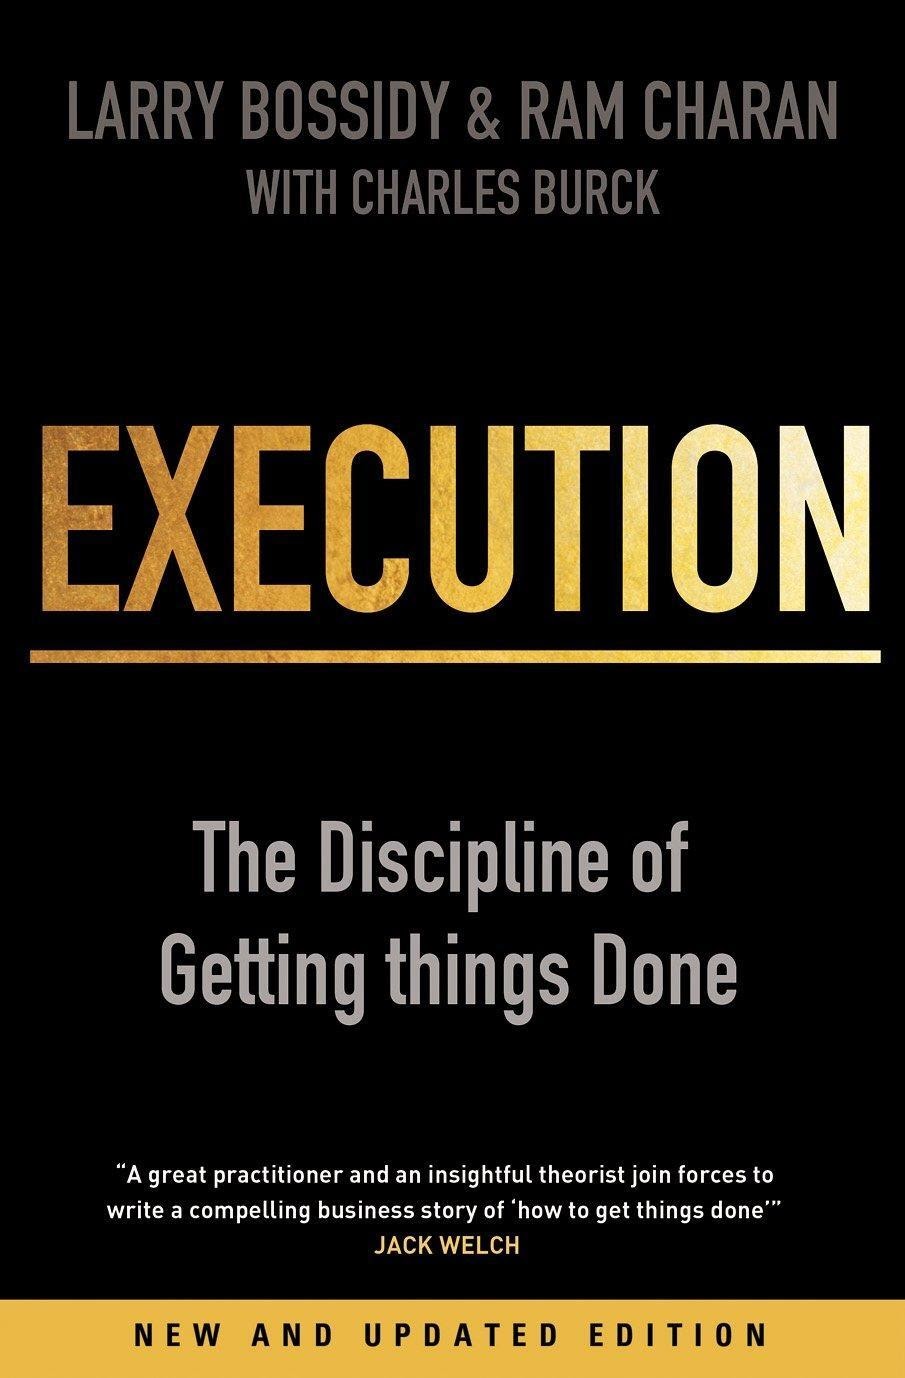 Book “Execution”